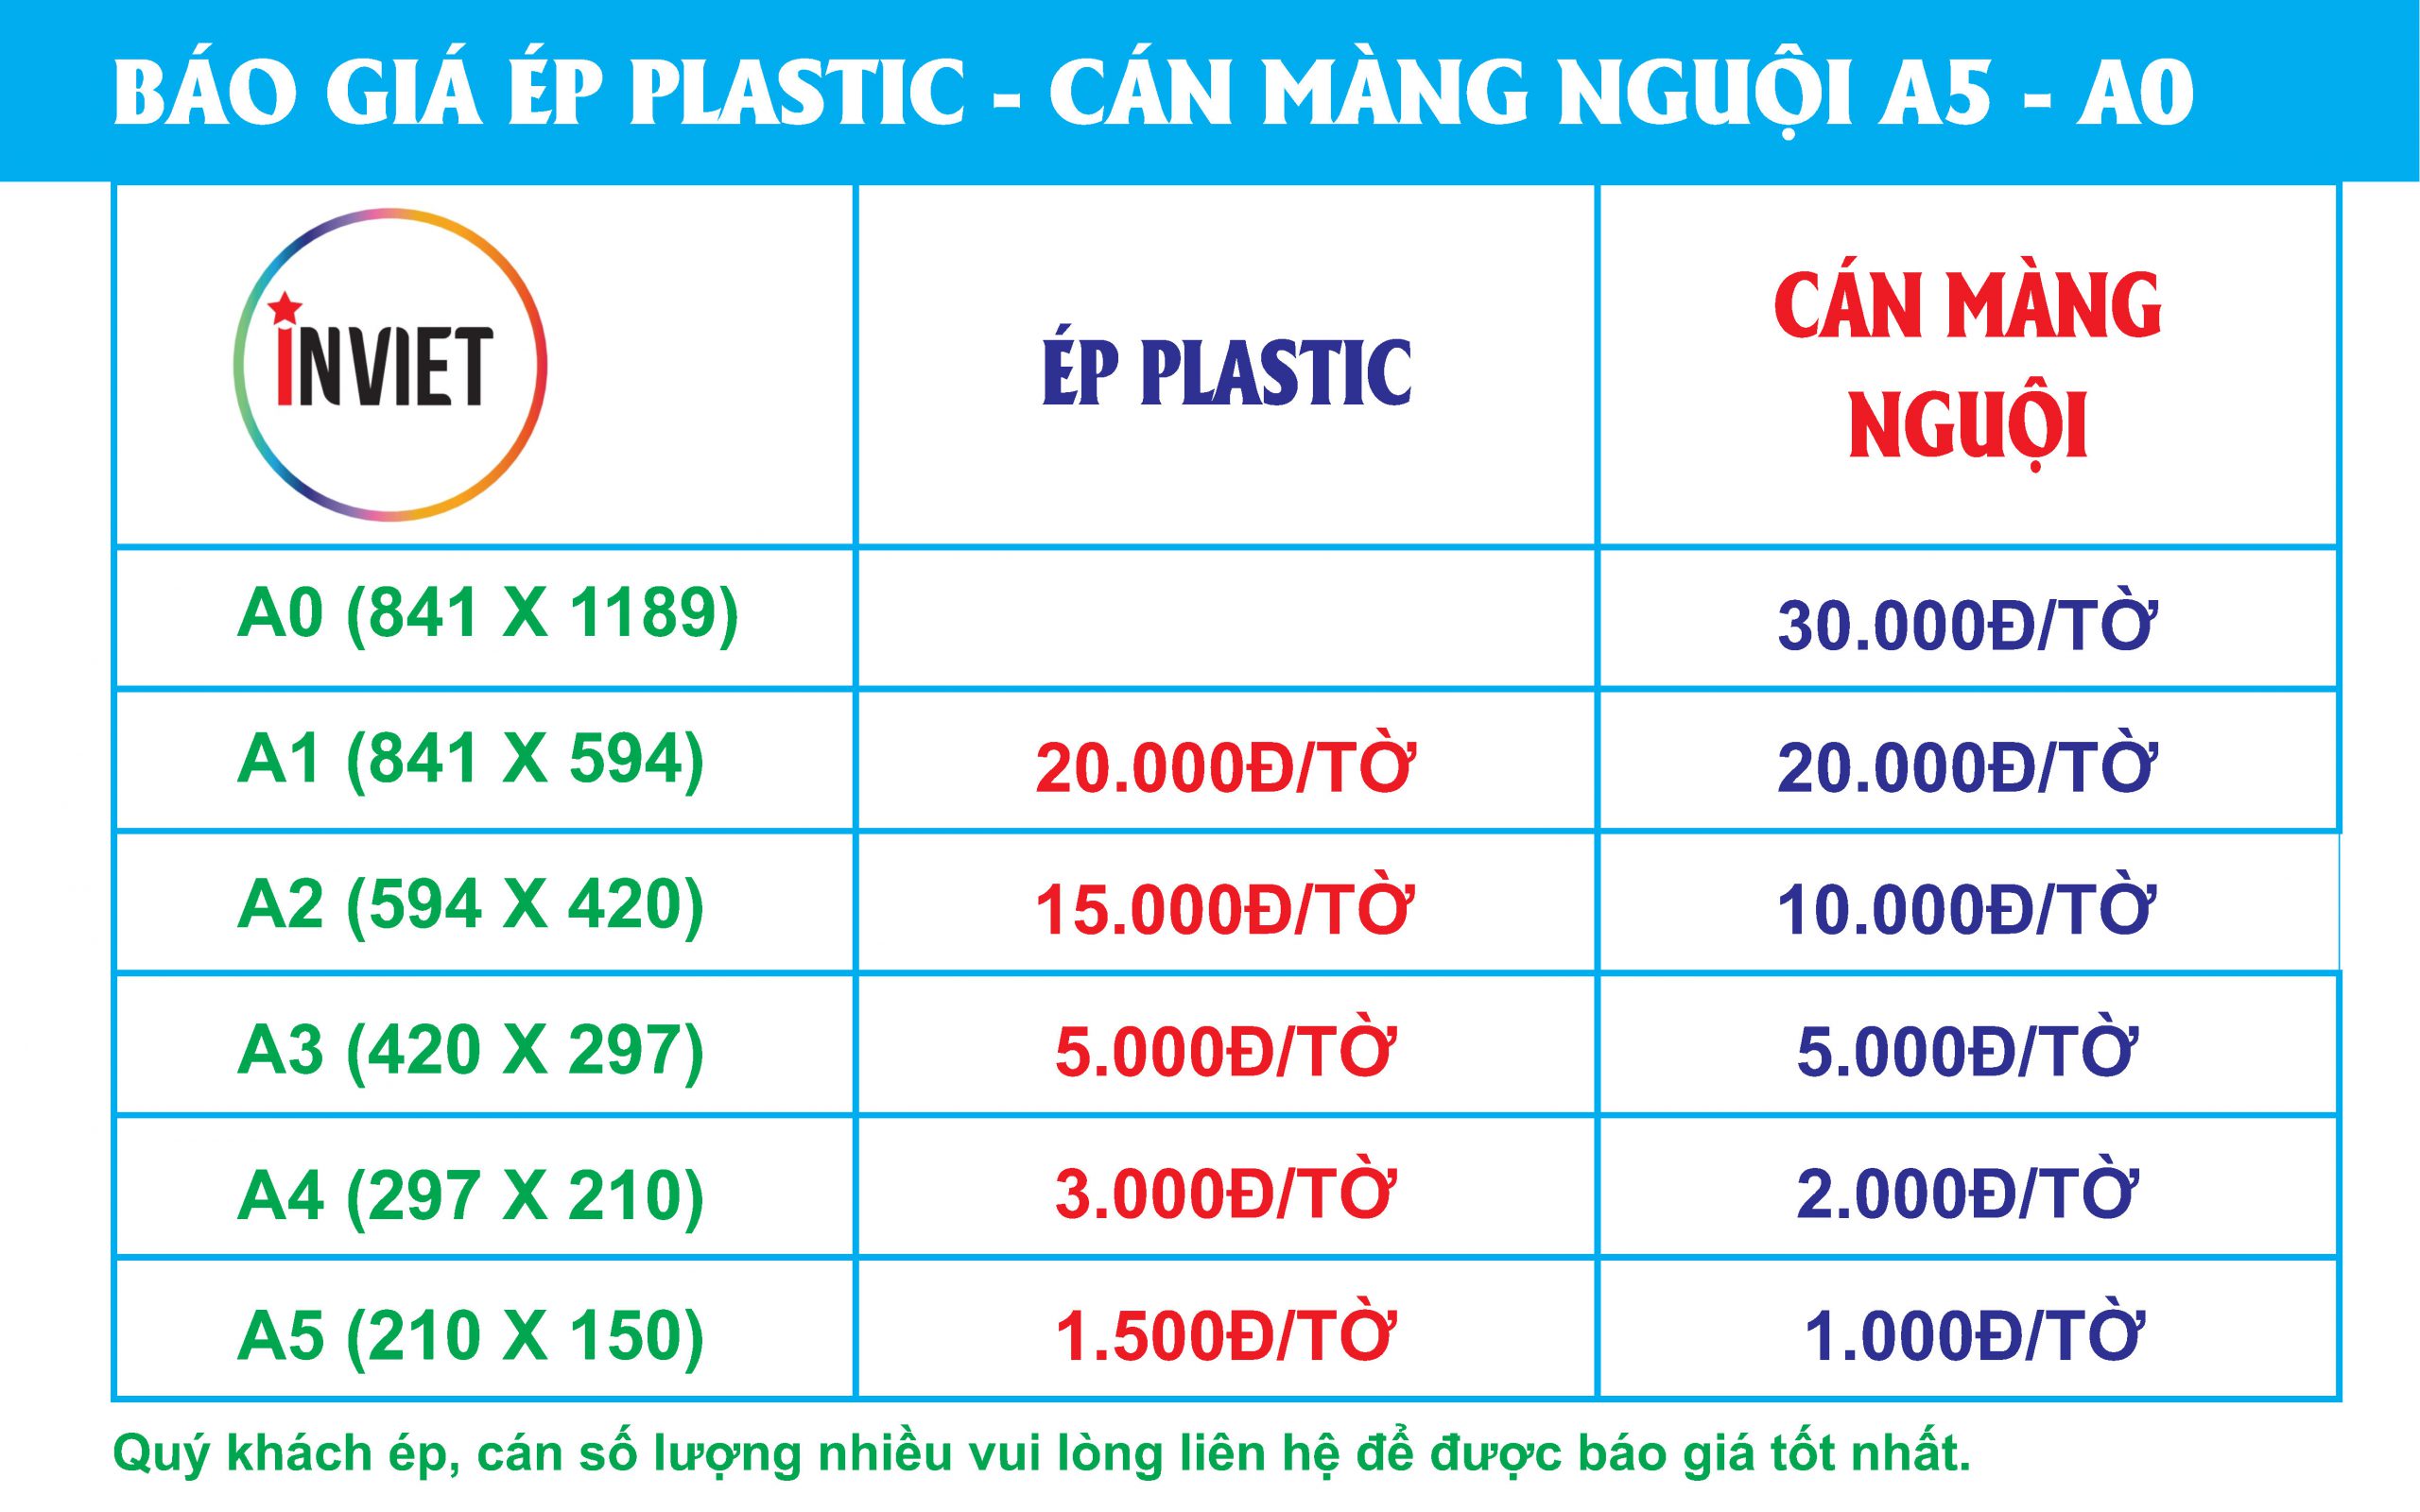 bảng báo giá ép plastic giá rẻ tại Quận Liêm Hà nội